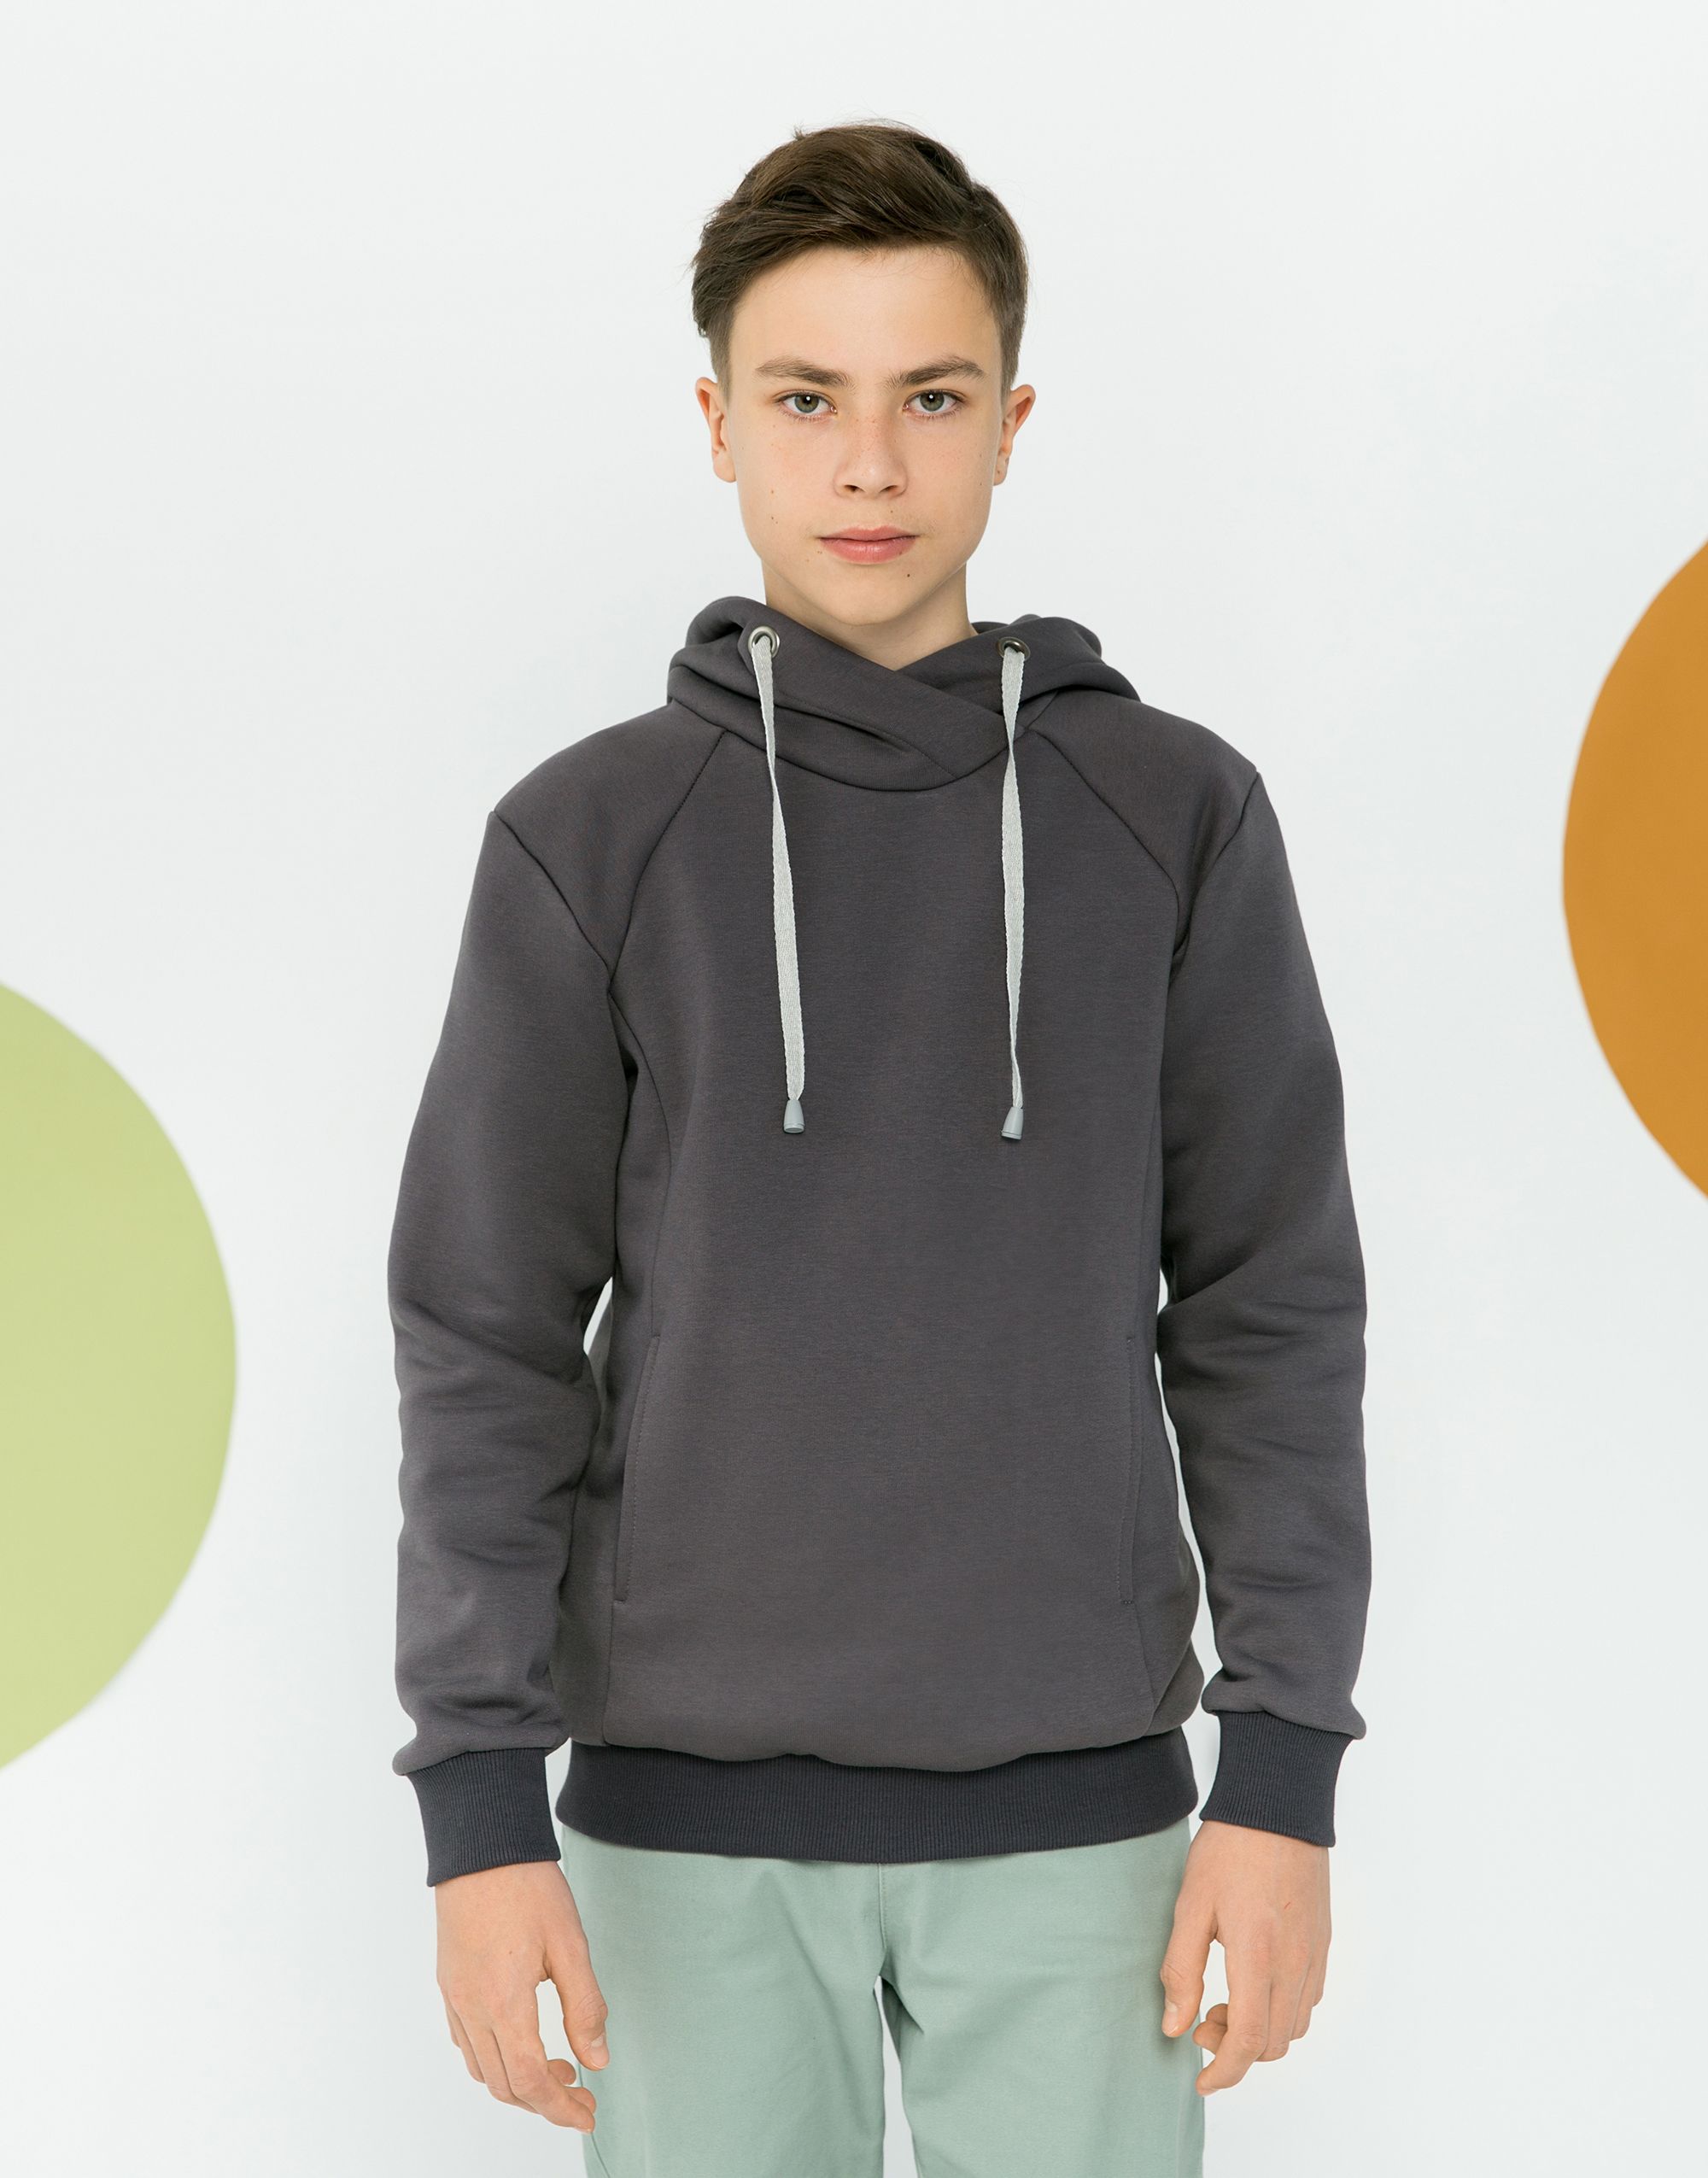 Kid's hoodie and sweatshirt, pattern №803 order and download in PDF